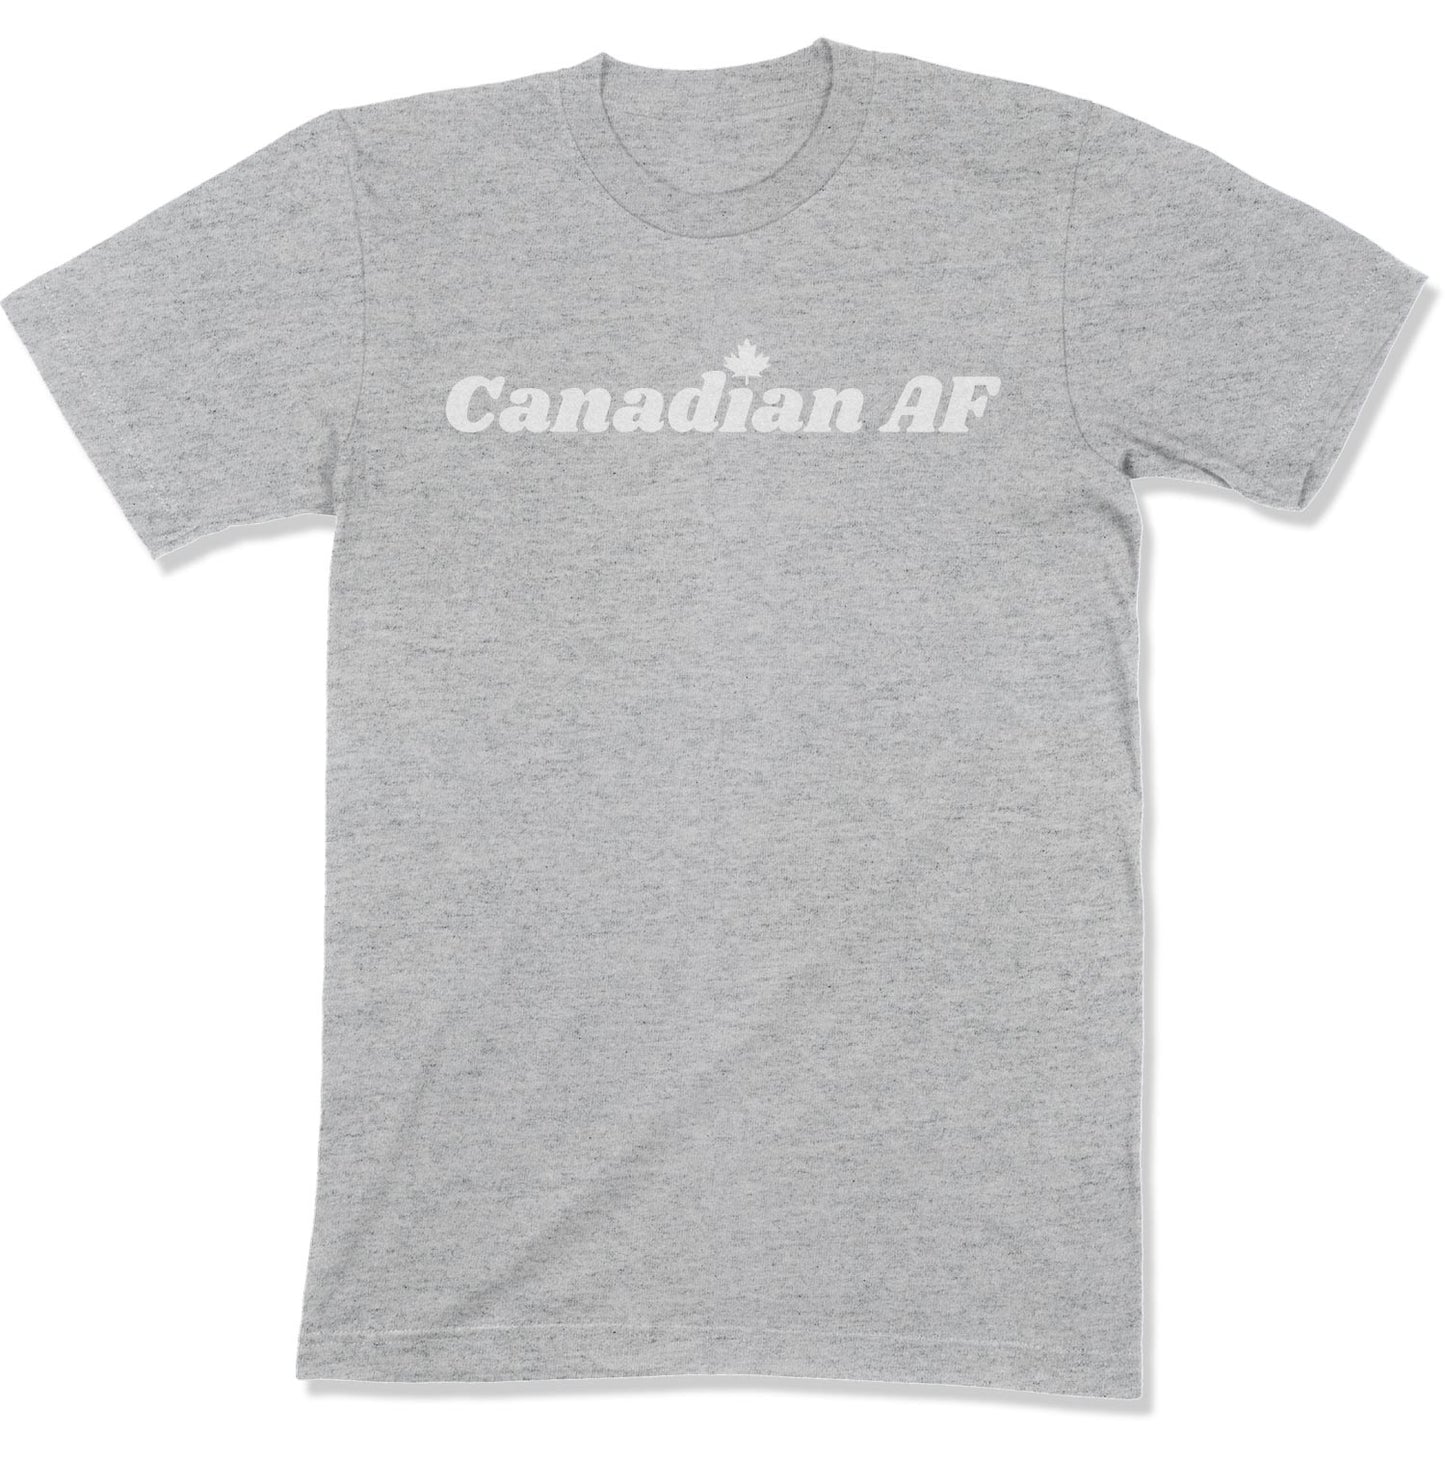 Canadian AF Unisex T-Shirt-East Coast AF Apparel